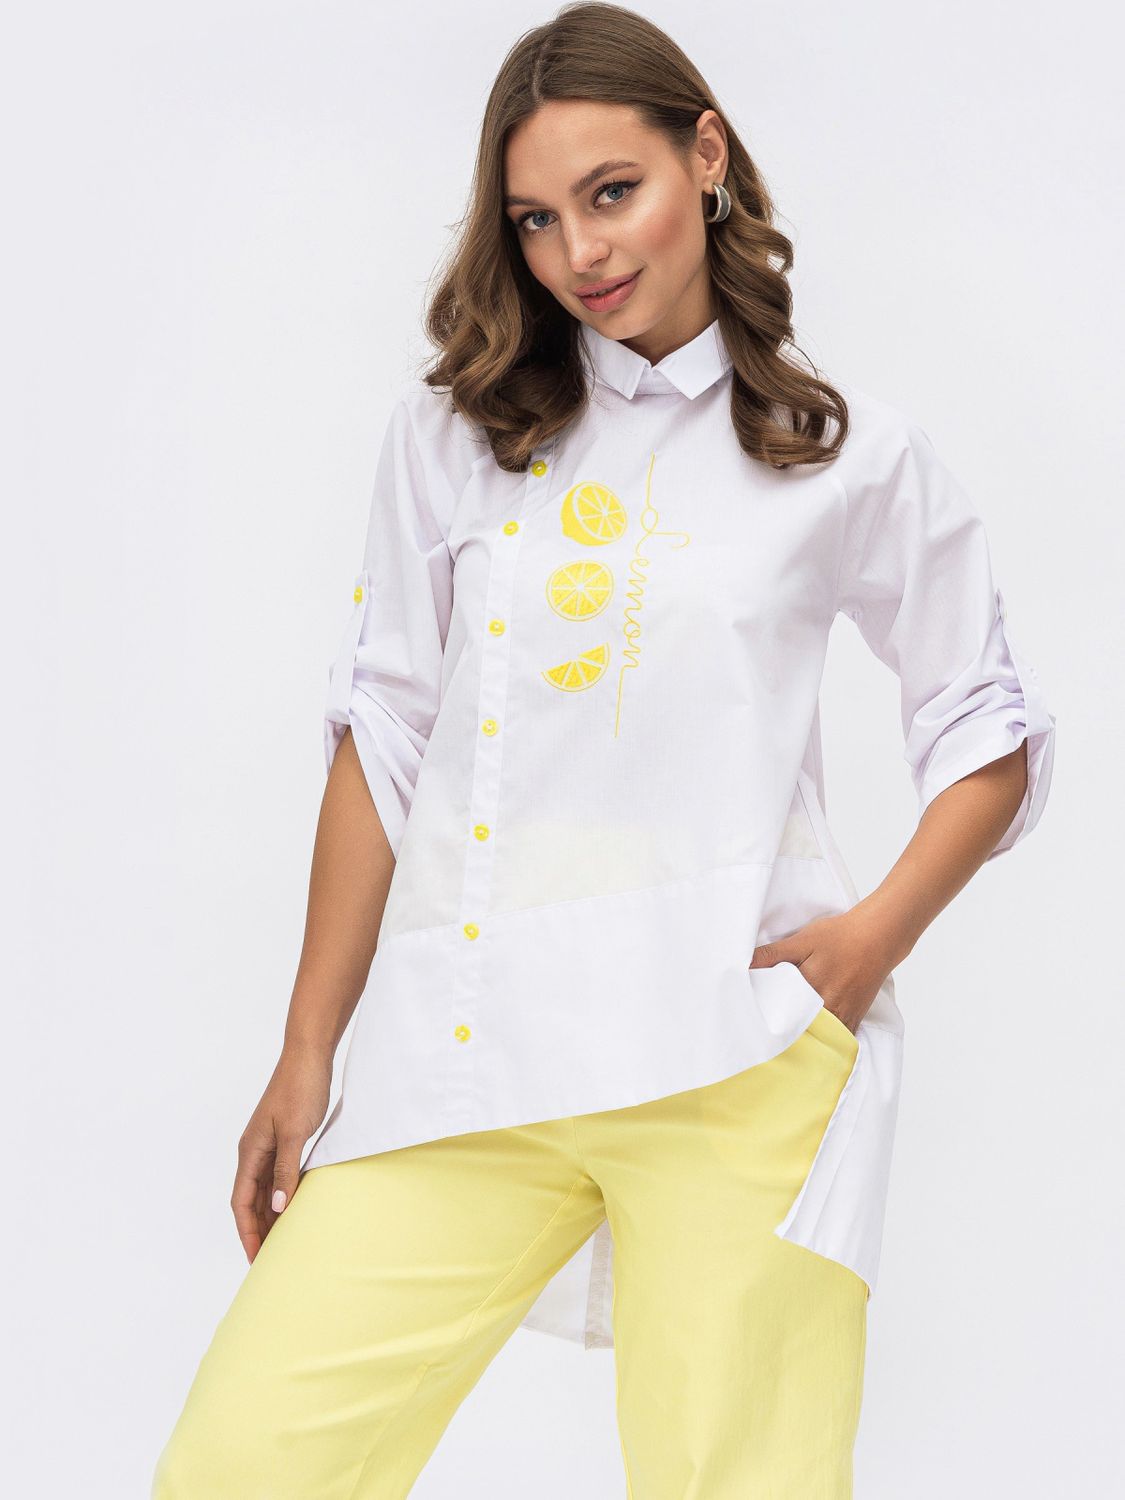 Біла блузка вільного крою з асиметричним низом - фото